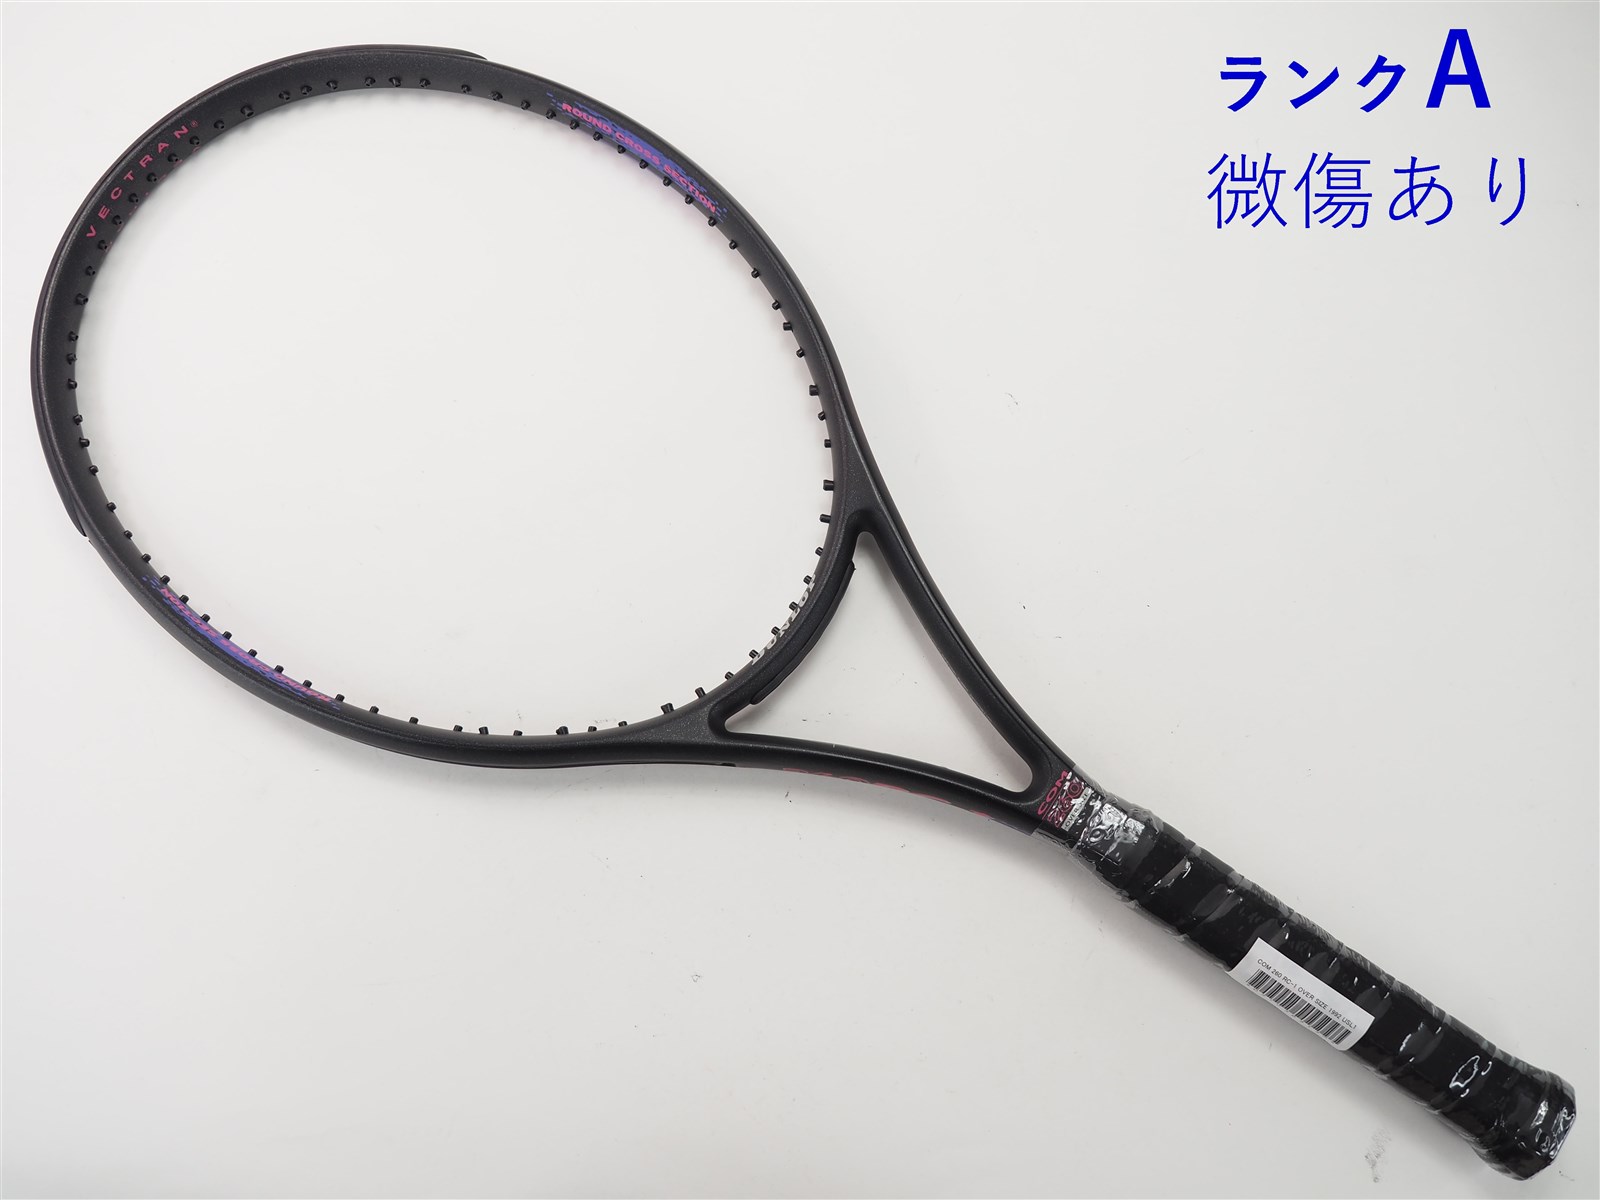 275インチフレーム厚テニスラケット ダンロップ リムブリード アドフォース エス21 オーバーサイズ 2002年モデル (G2)DUNLOP RIMBREED ADFORCE S21 OS 2002